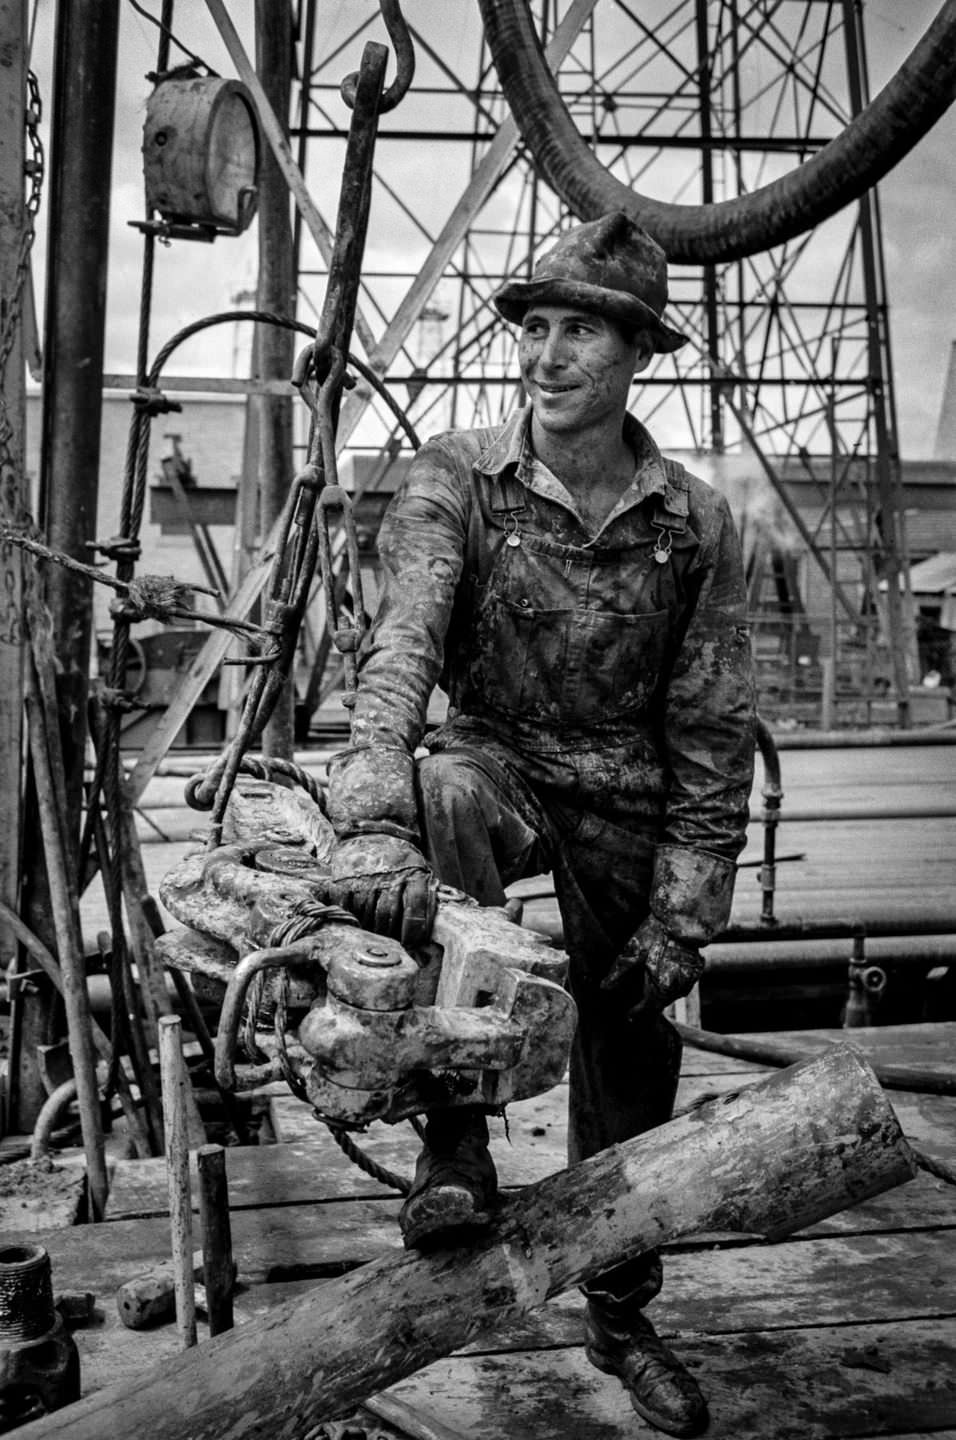 Kilgore's Oil Frontier: Russell Lee's Photographic Journey of Hardworking Men in the 1930s